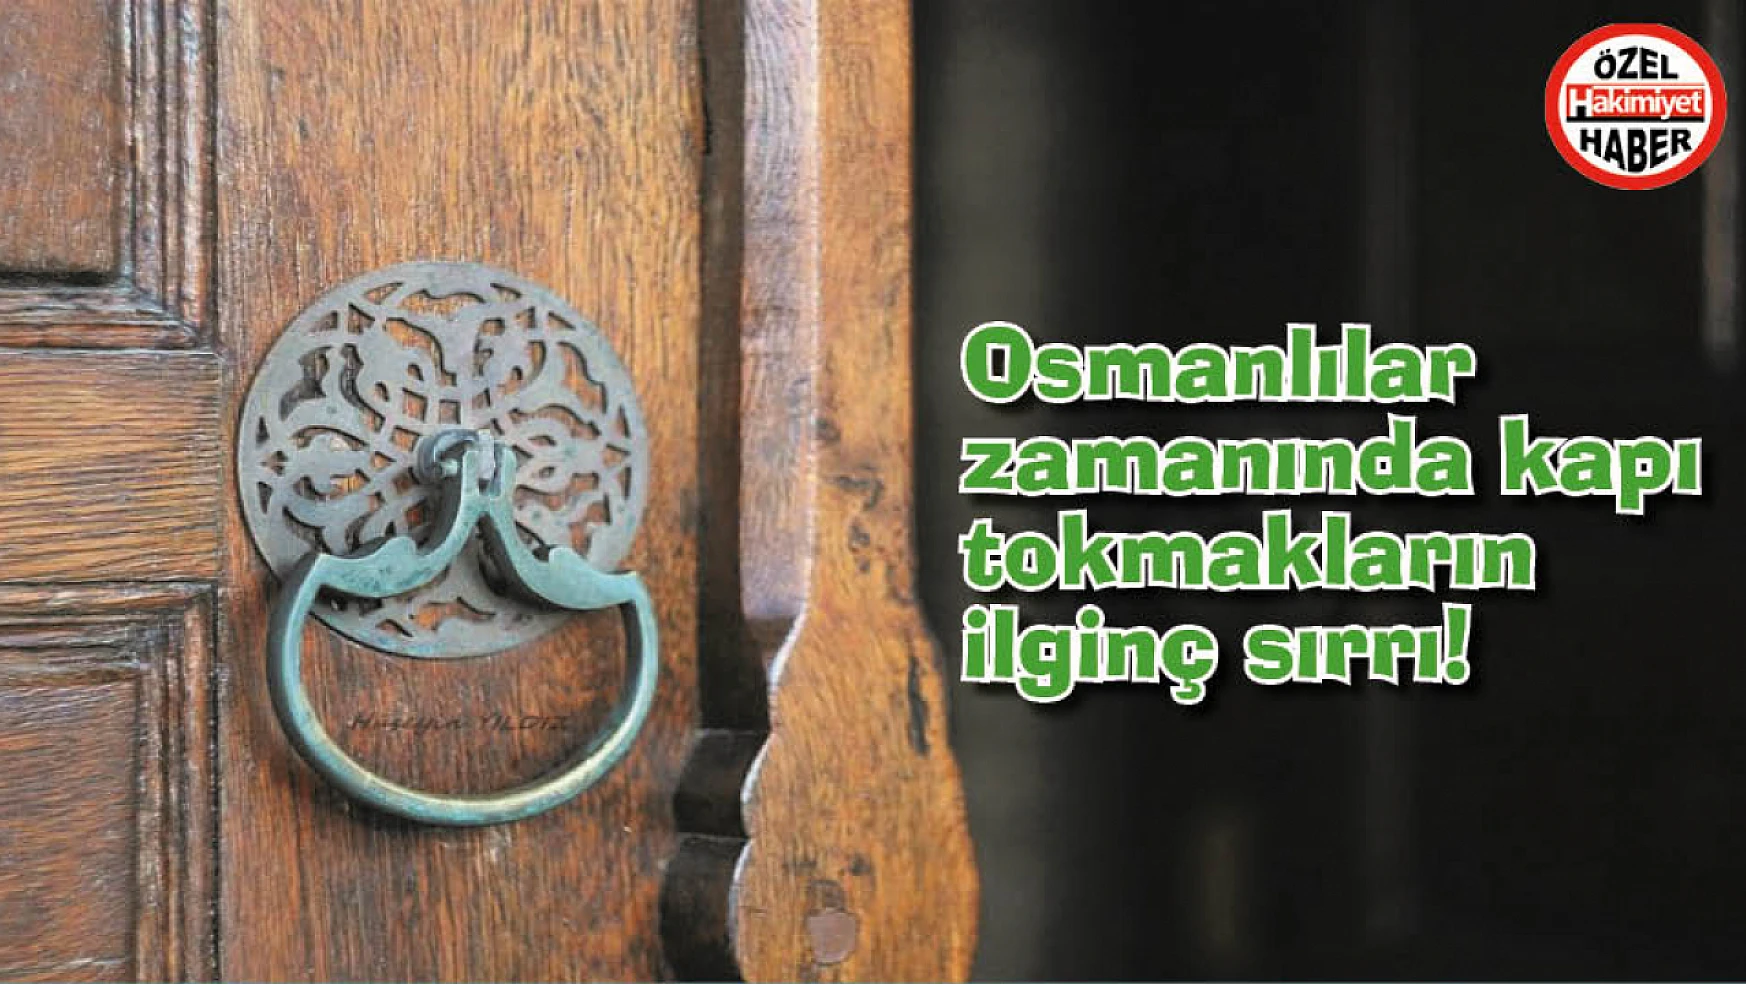 Osmanlılar zamanında kapı tokmakların ilginç sırrı! Bu sırrı duyunca çok şaşıracaksınız!